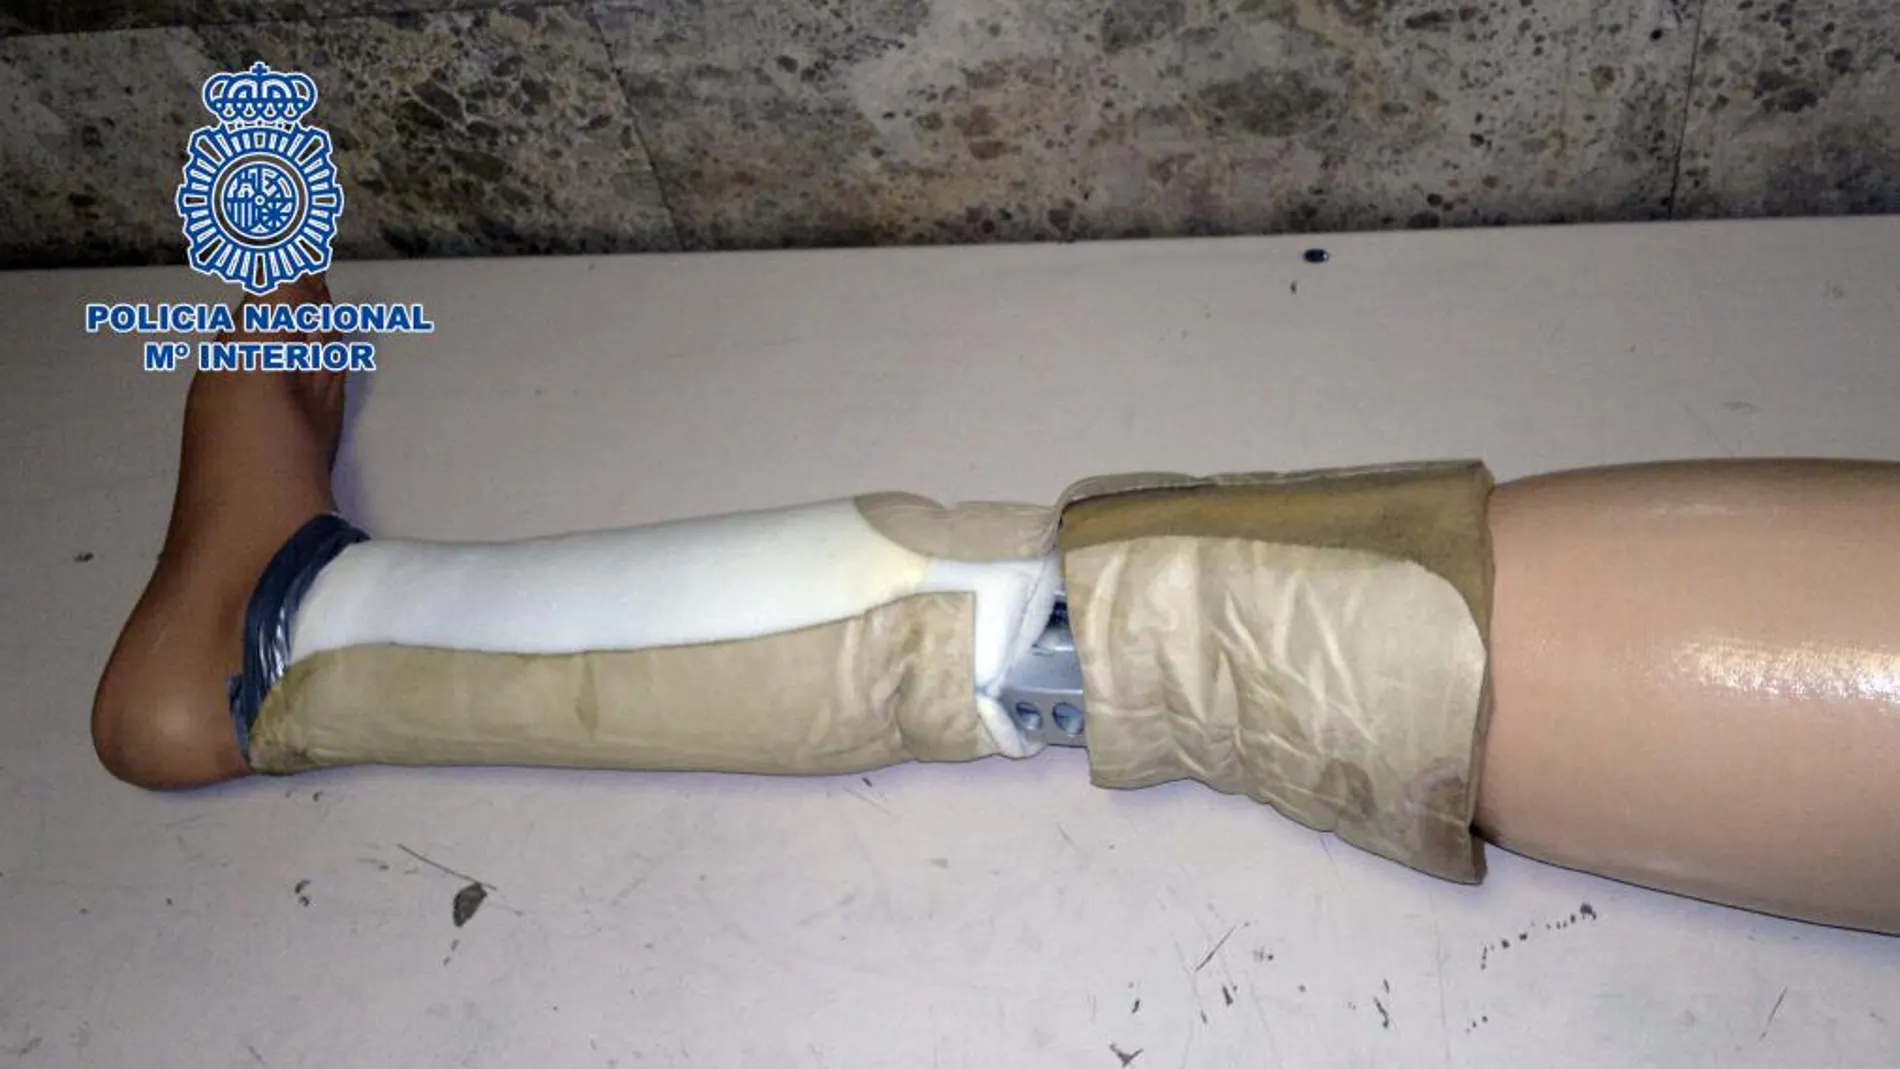 Imagen de la pierna ortopédico con las bolssas de cocaína pegadas